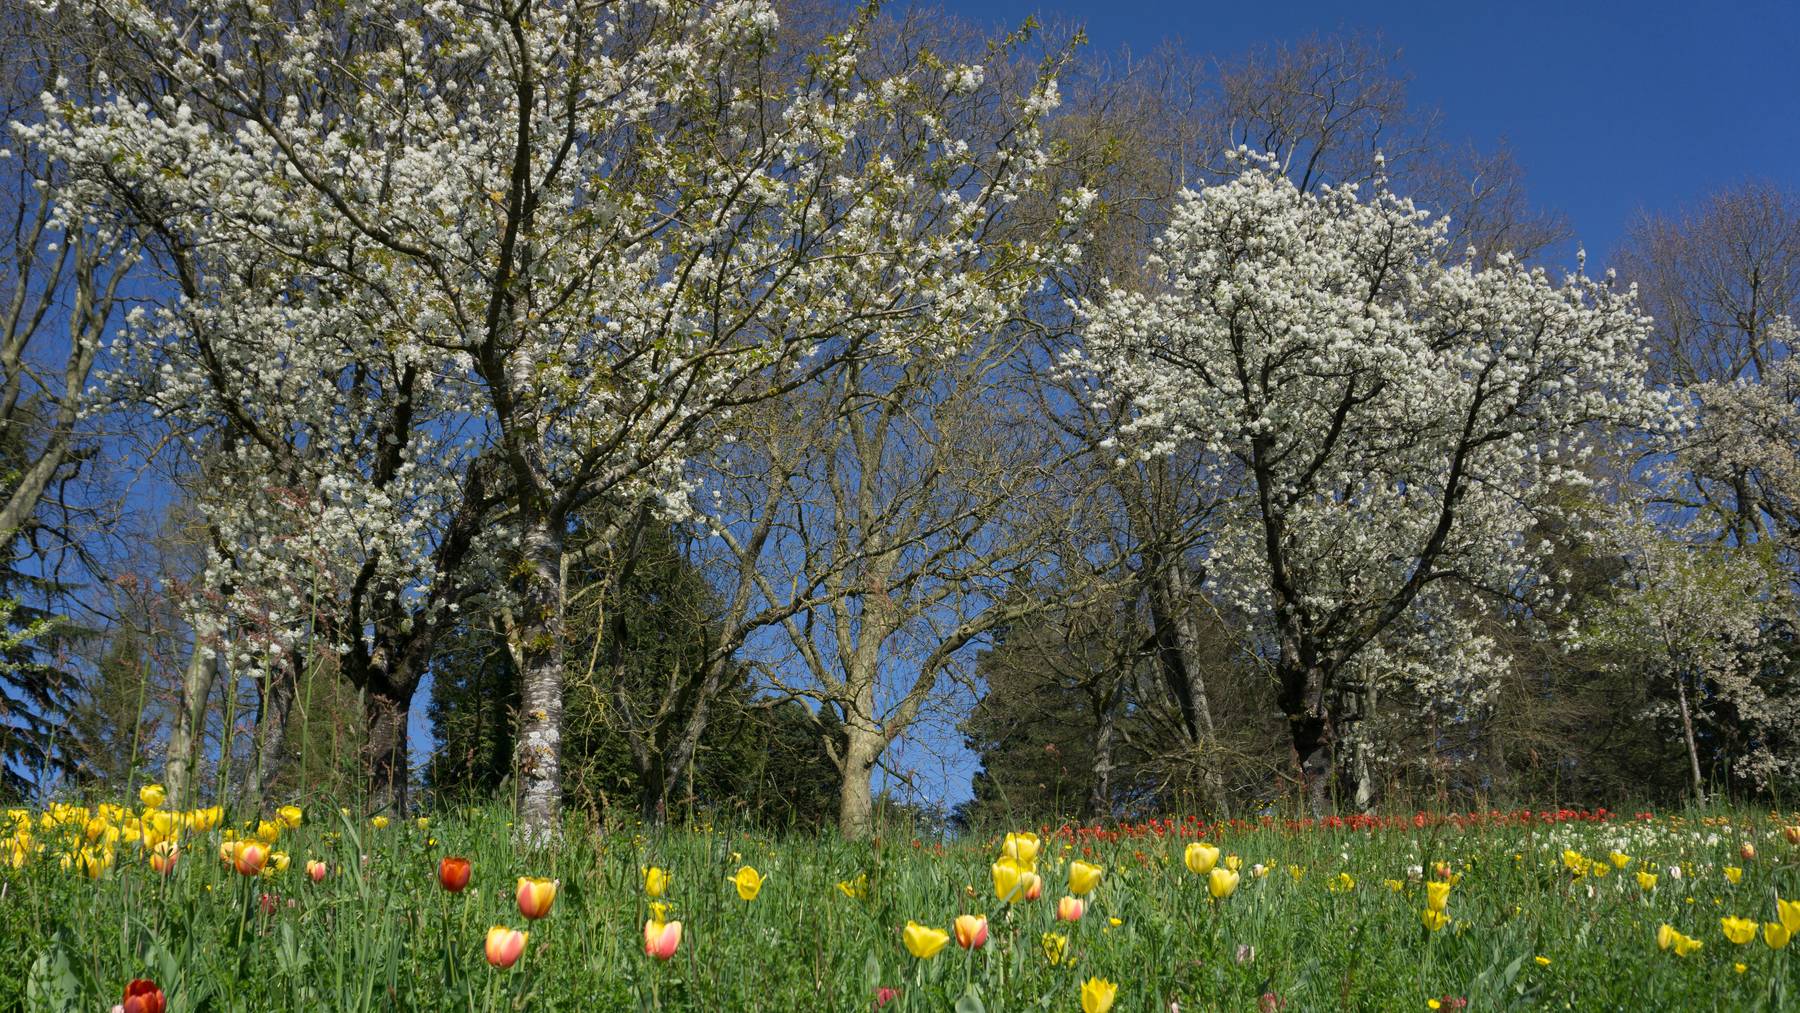 Rekordverdächtige Pollensaison in der Schweiz